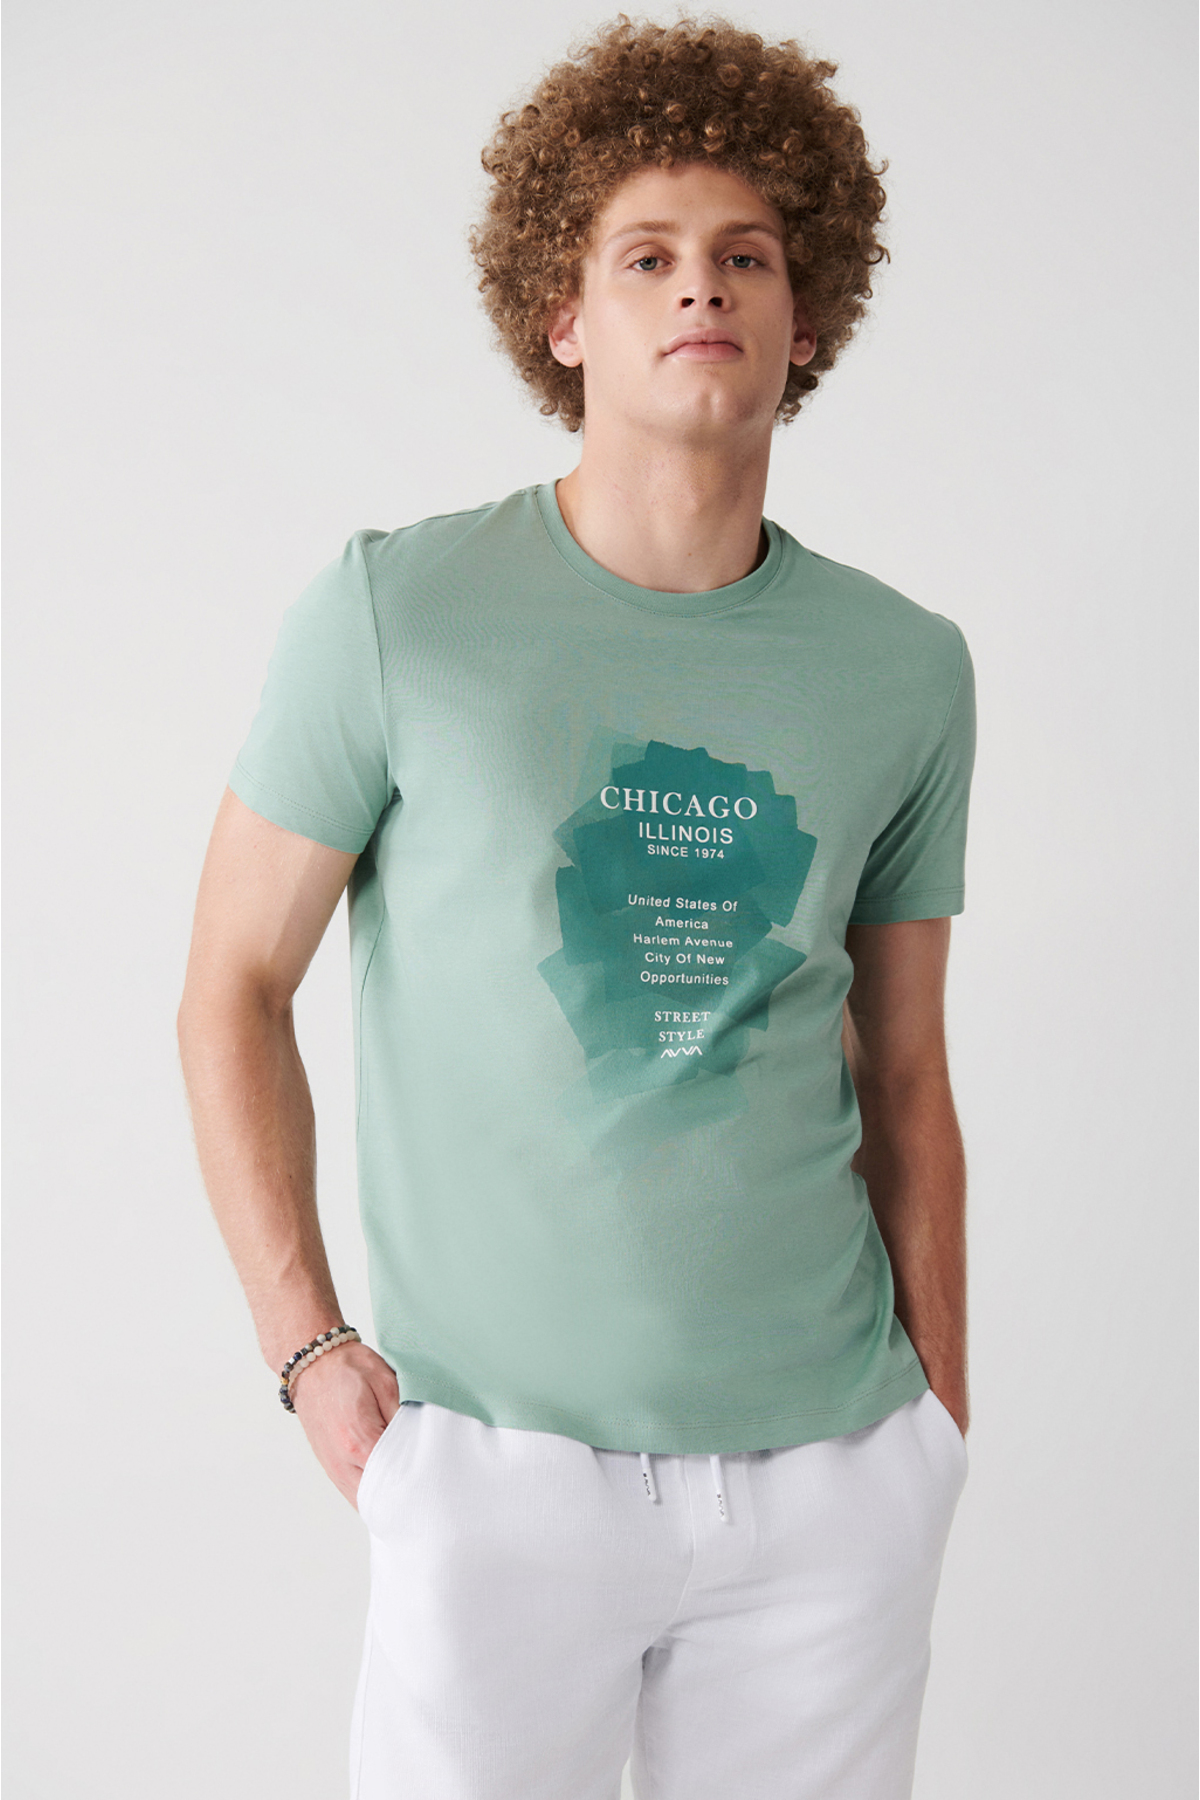 Avva Men's Aqua Green 100% Cotton Crew Neck Printed Comfort Fit Relaxed Cut T-shirt